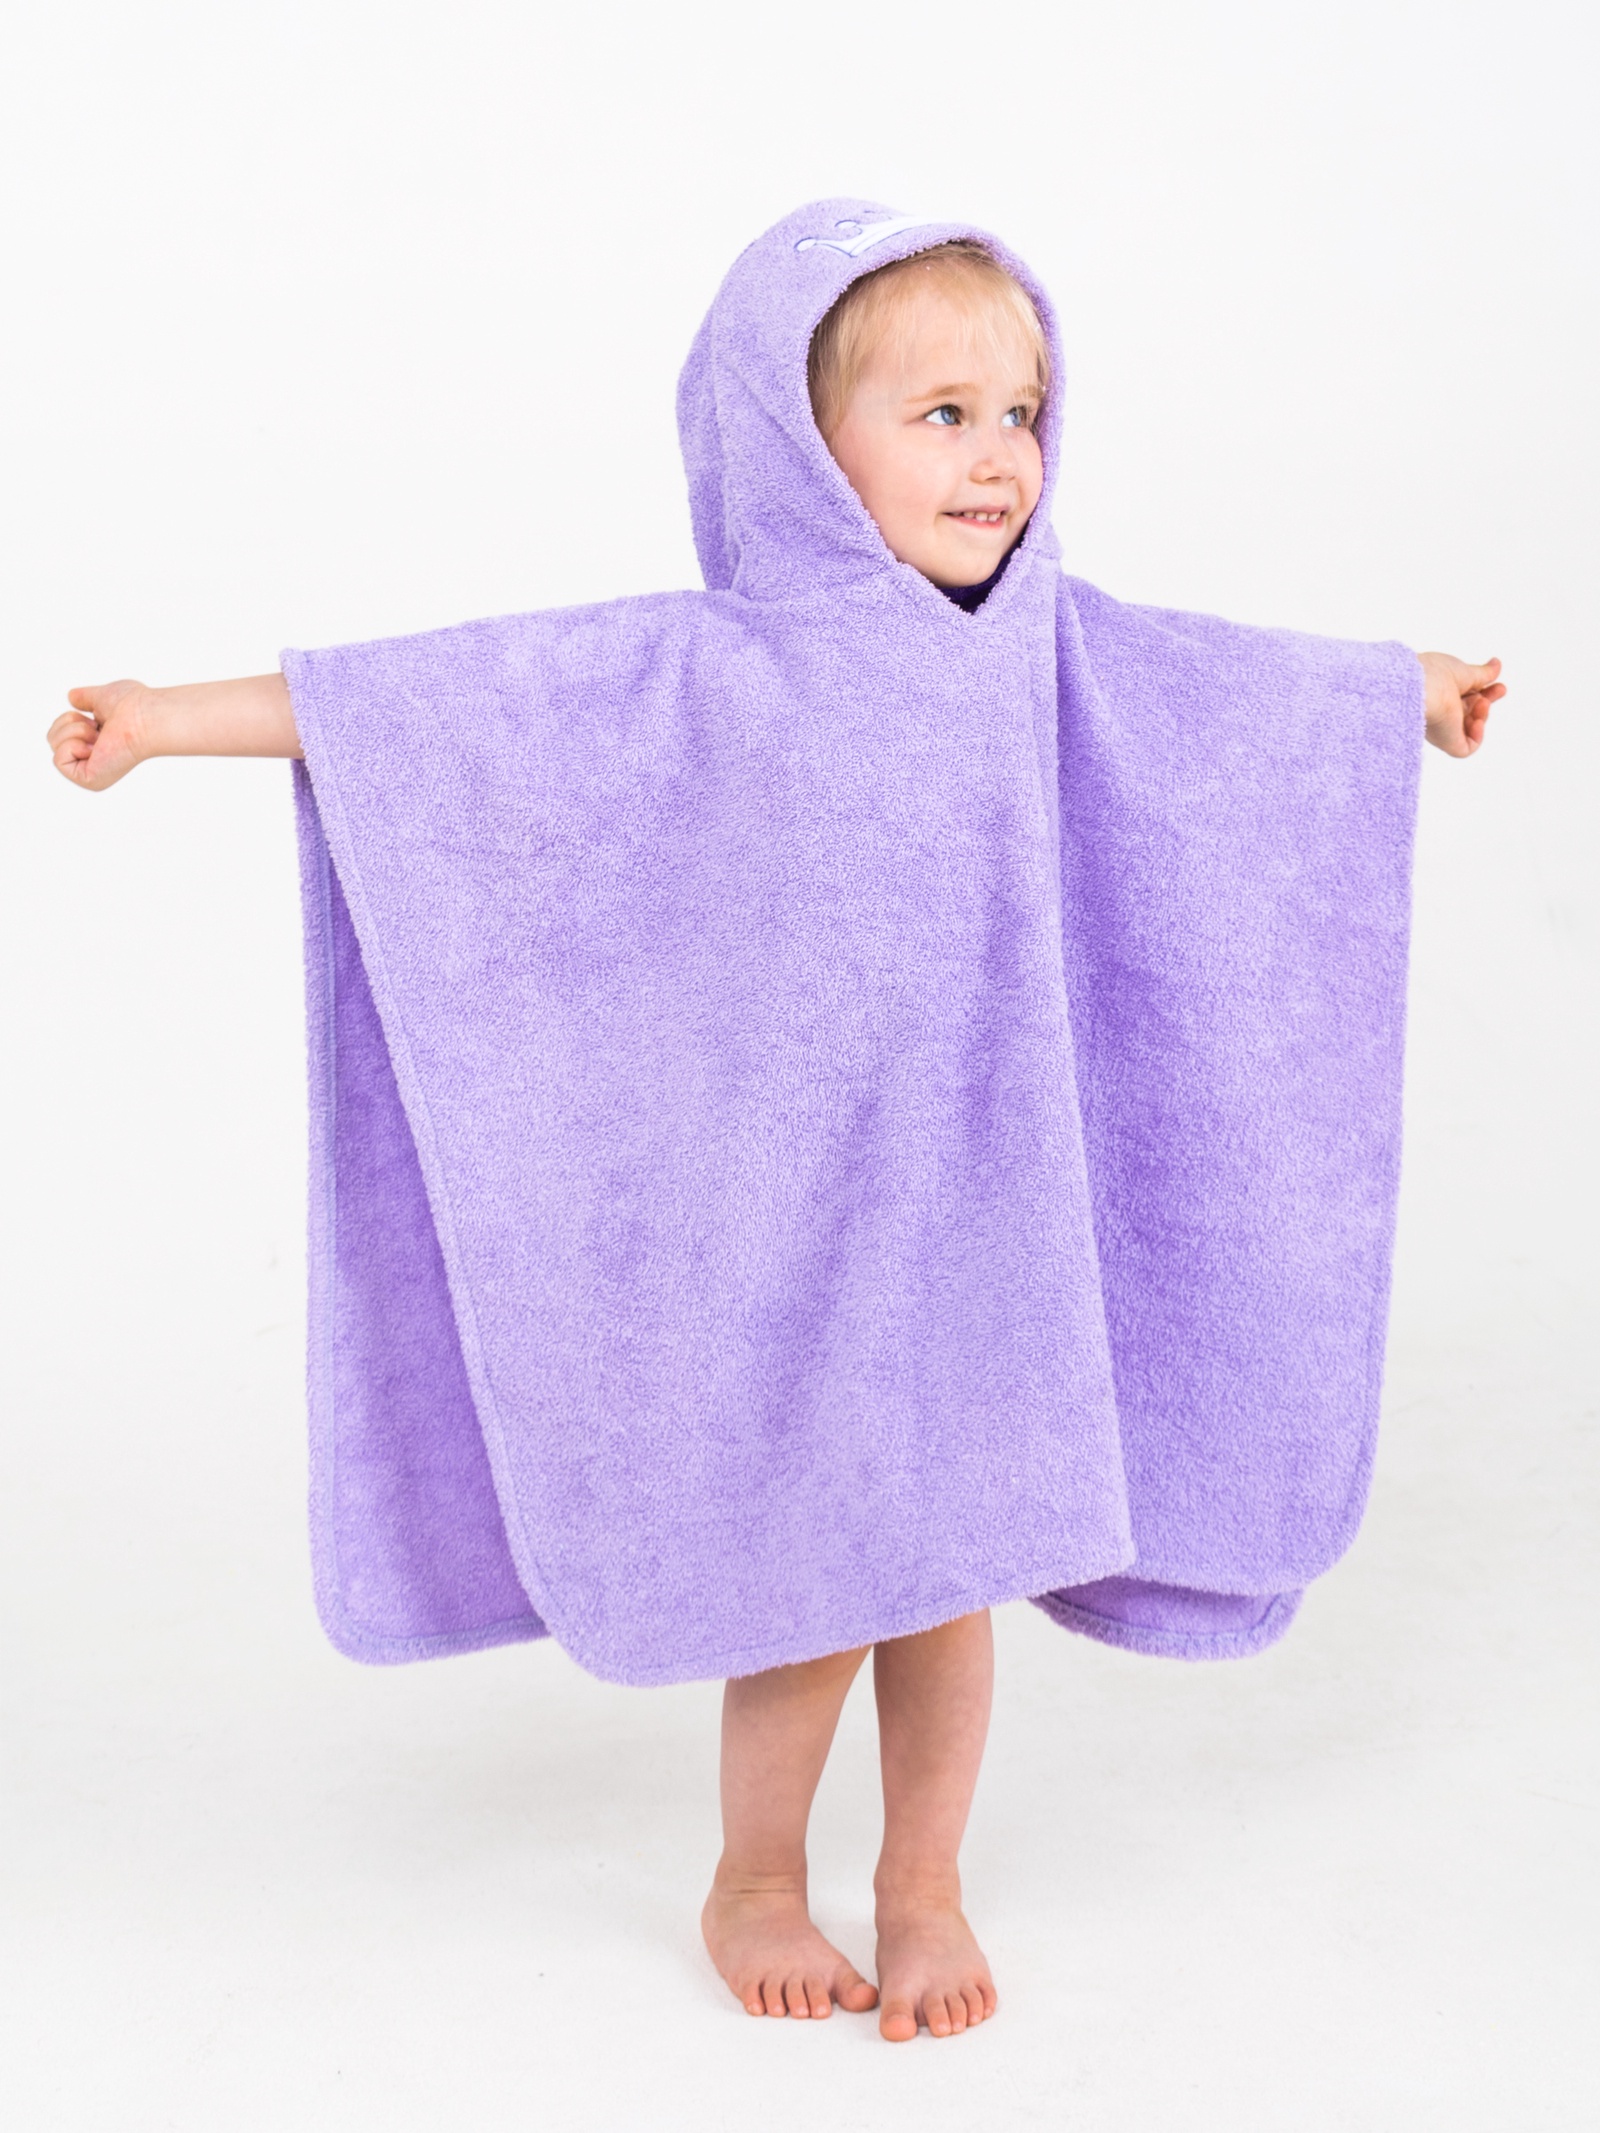 Полотенце детское BabyBunny Полотенце пончо - Принцесса, лиловое, фиолетовый